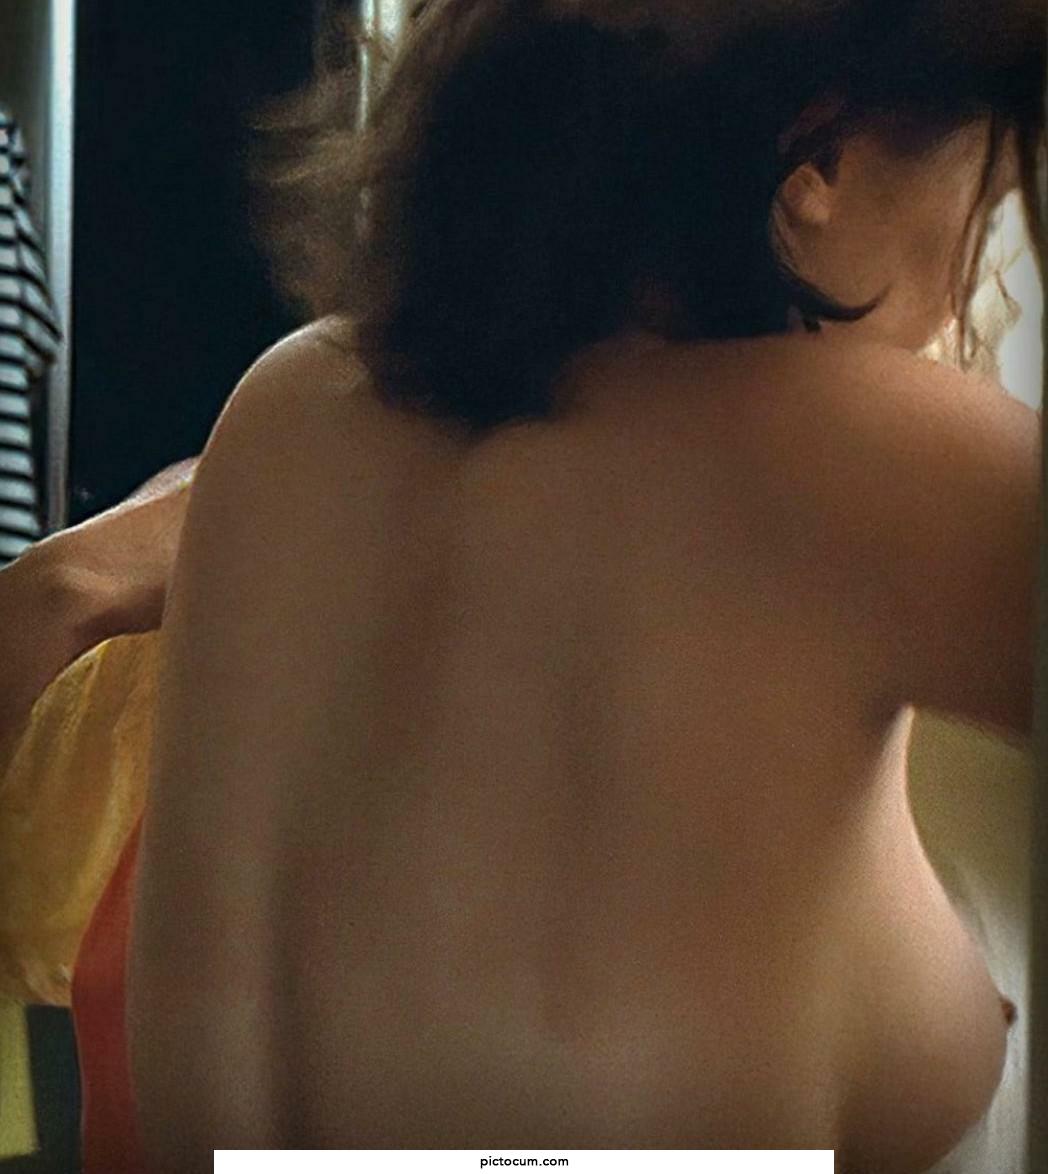 Elizabeth Olsen big side boob